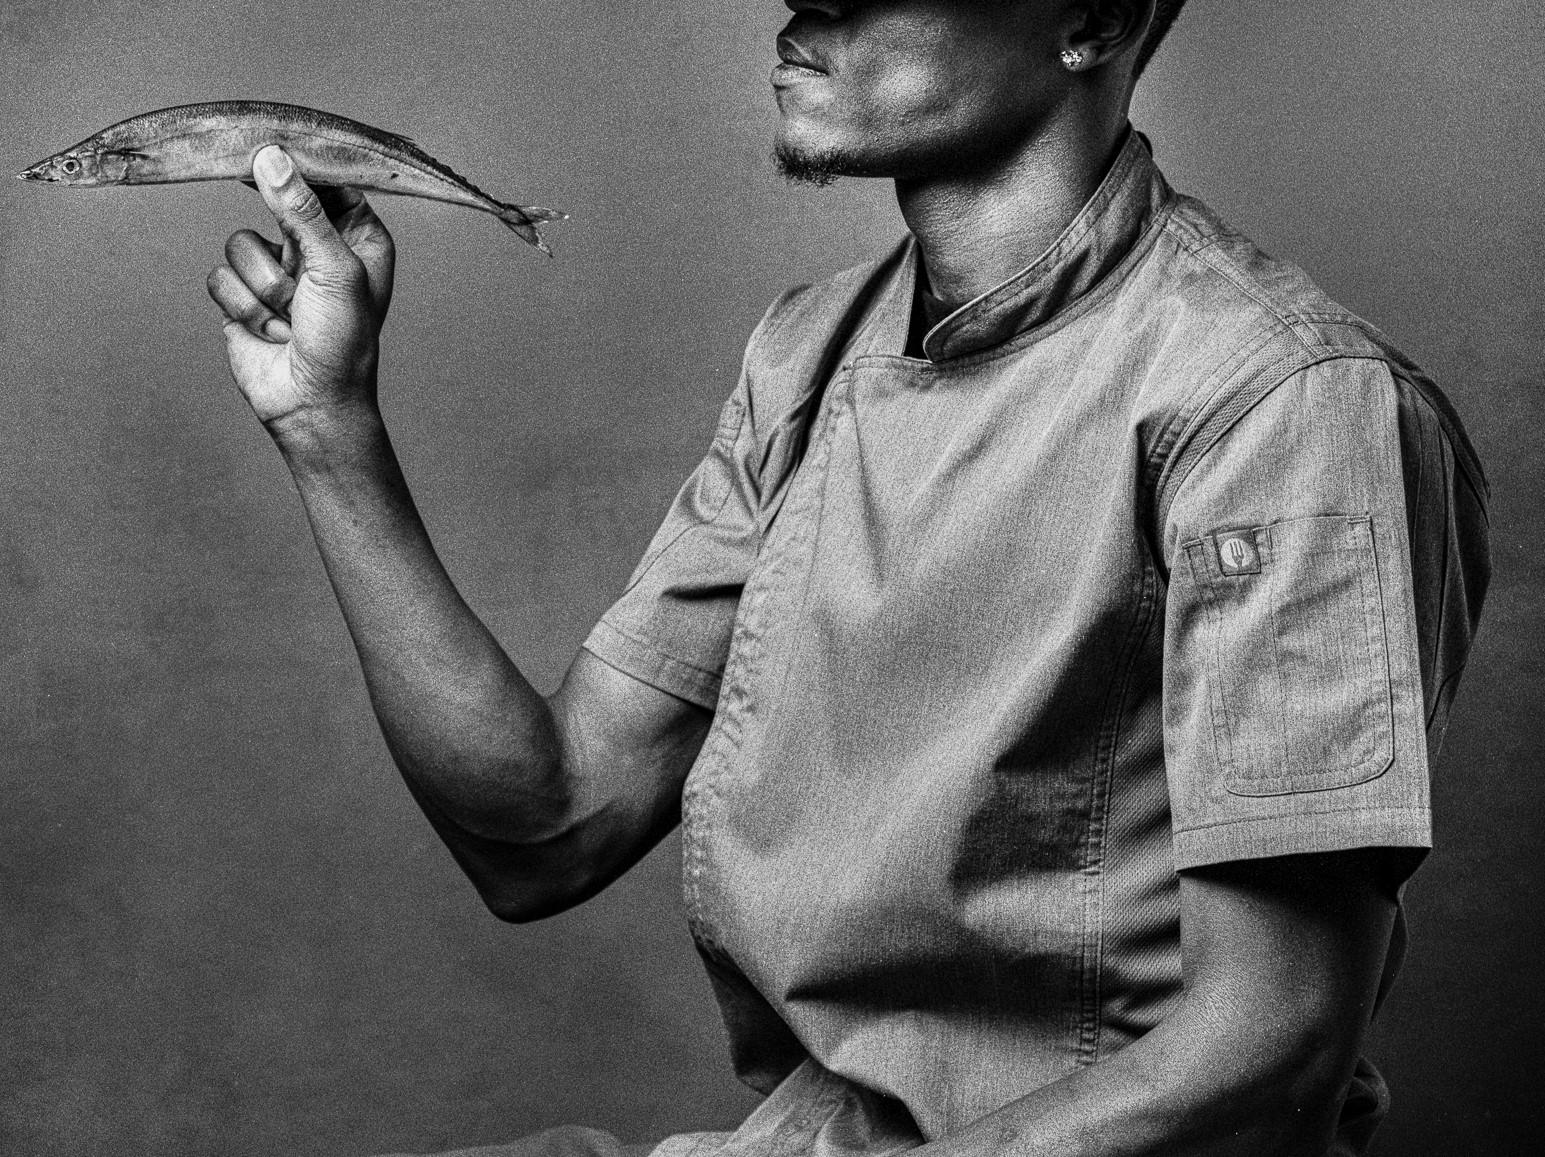 Tinker, Chef, Fisch. Schwarz-Weiß-Porträtdruck (Grau), Black and White Photograph, von Shine Huang